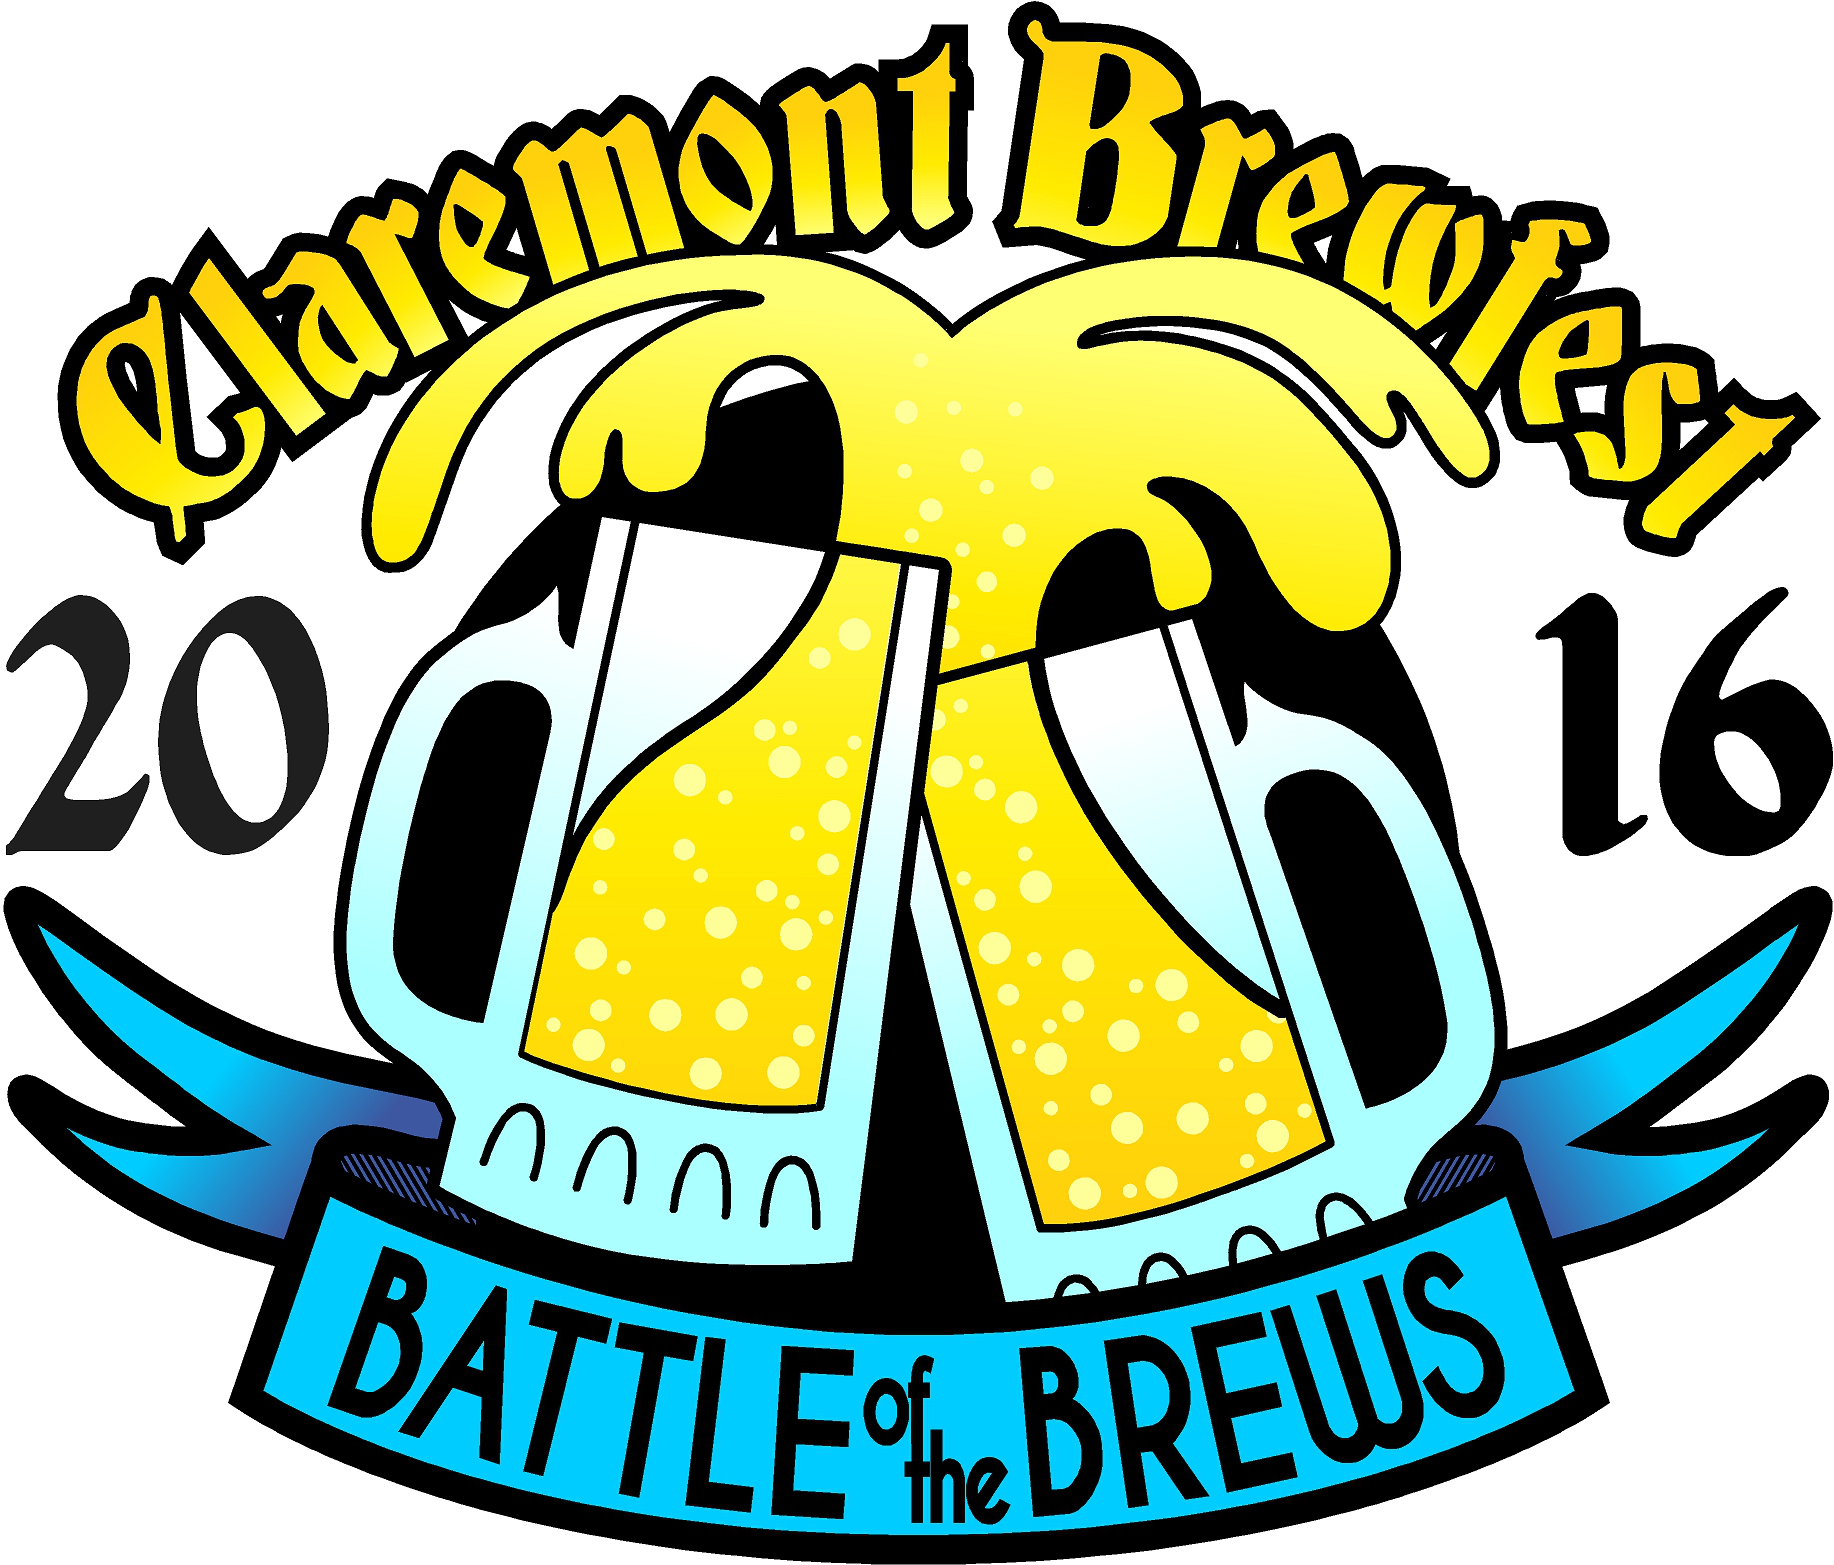 Claremont Brewfest - Claremont Brewfest (1834x1565)